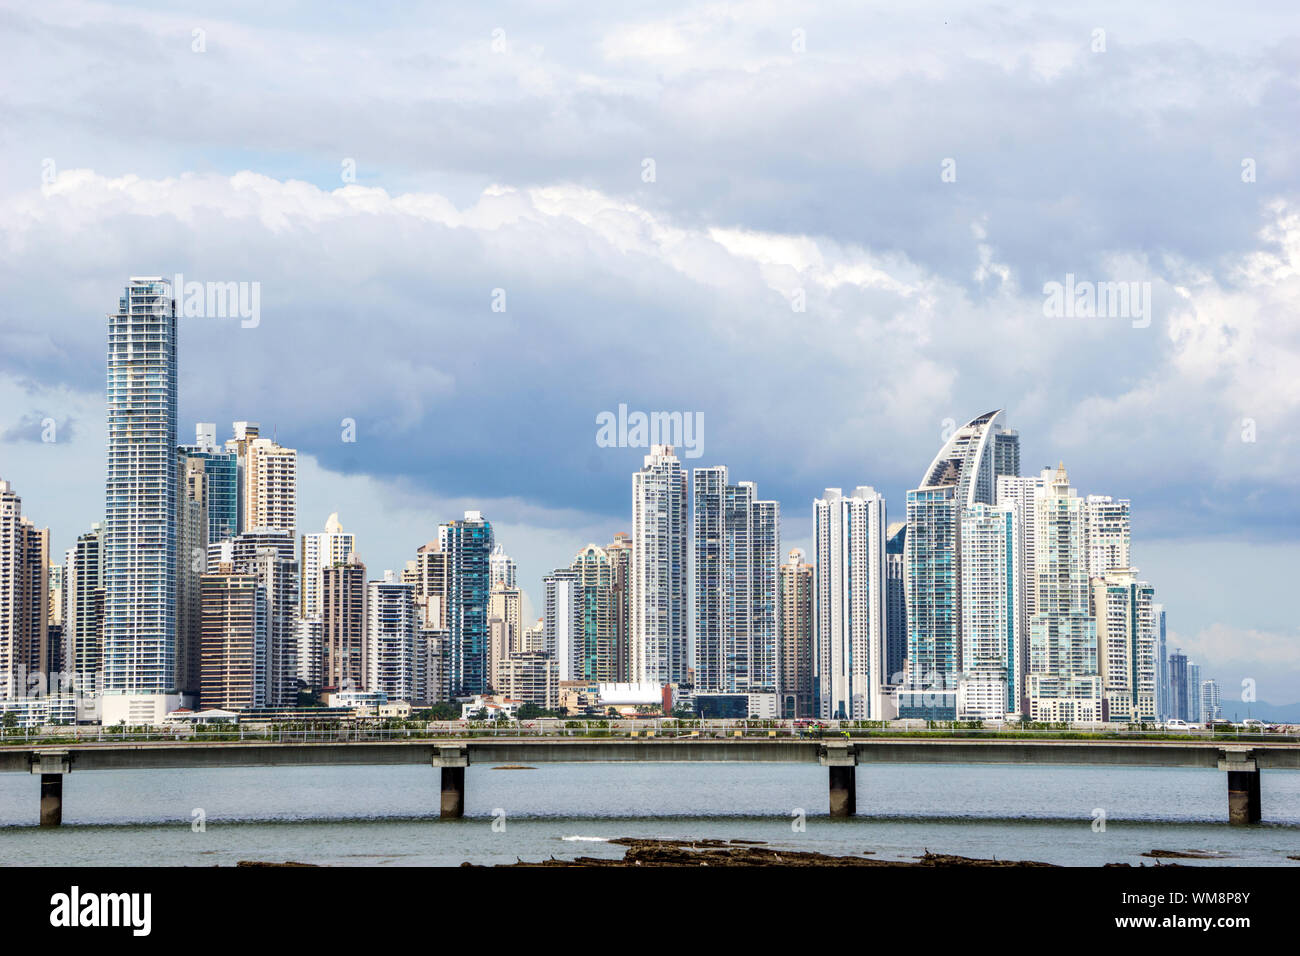 Panama City, Panama Skyline from across the bay Stock Photo